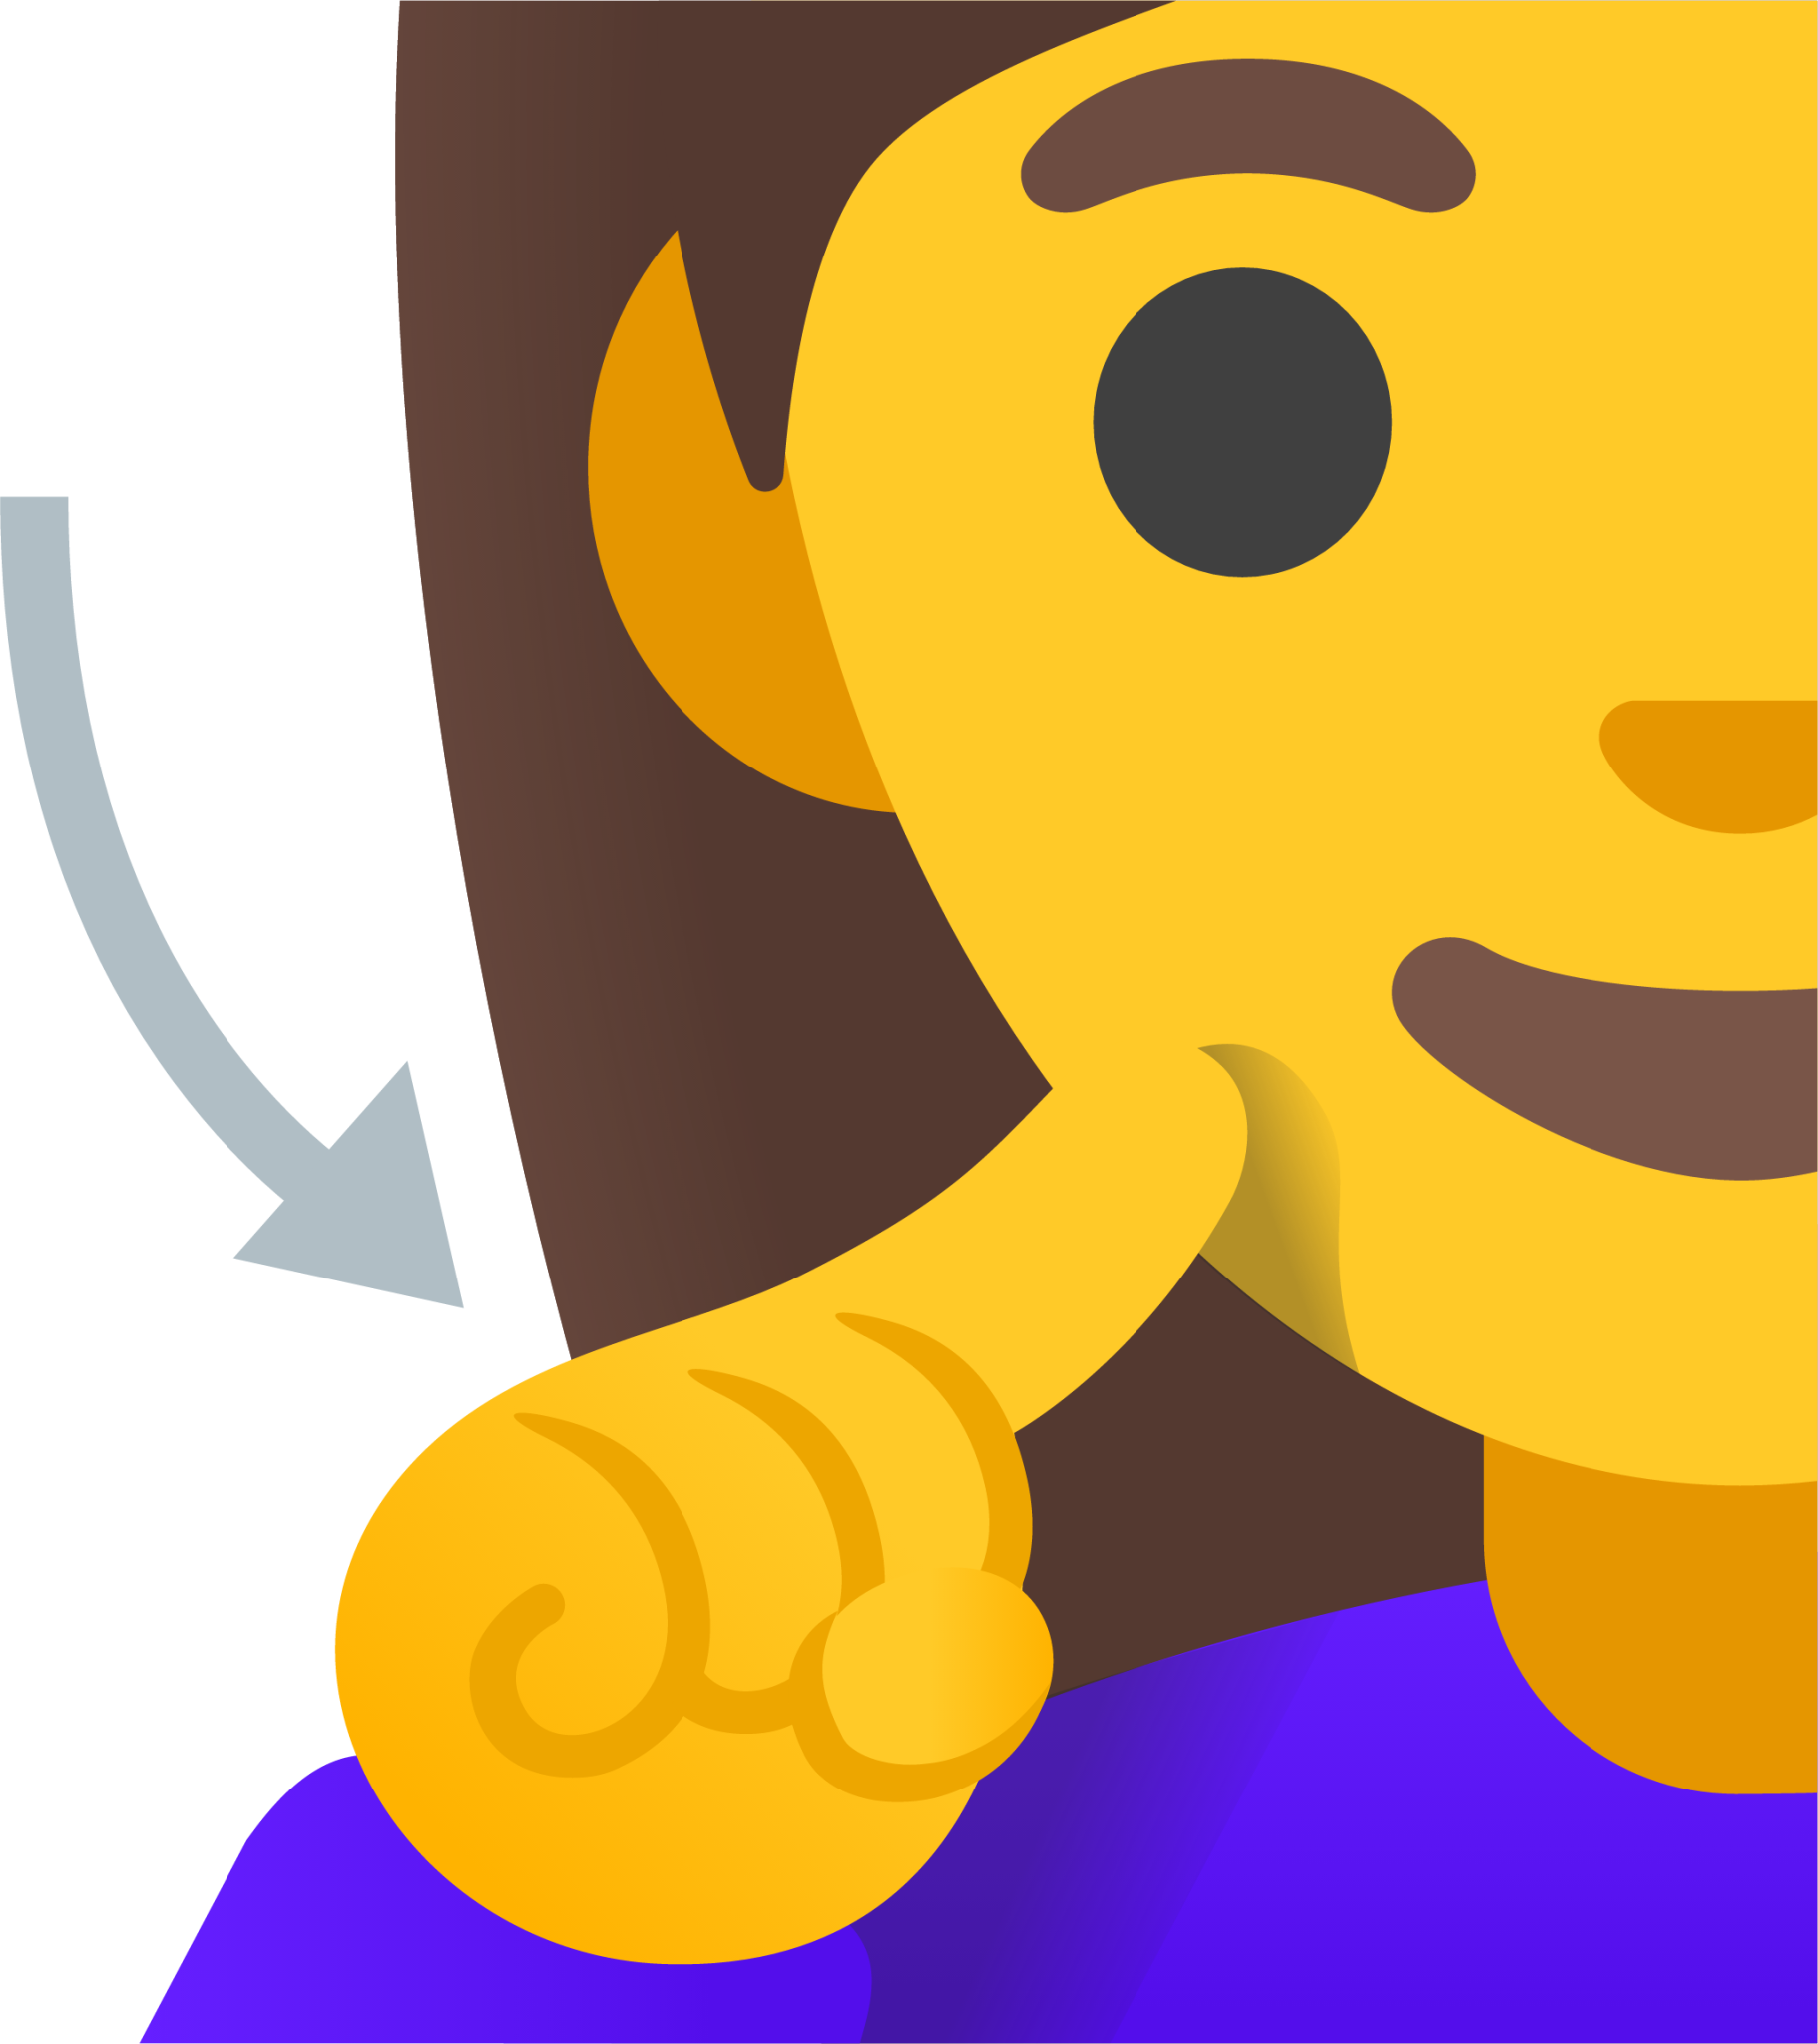 deaf woman emoji